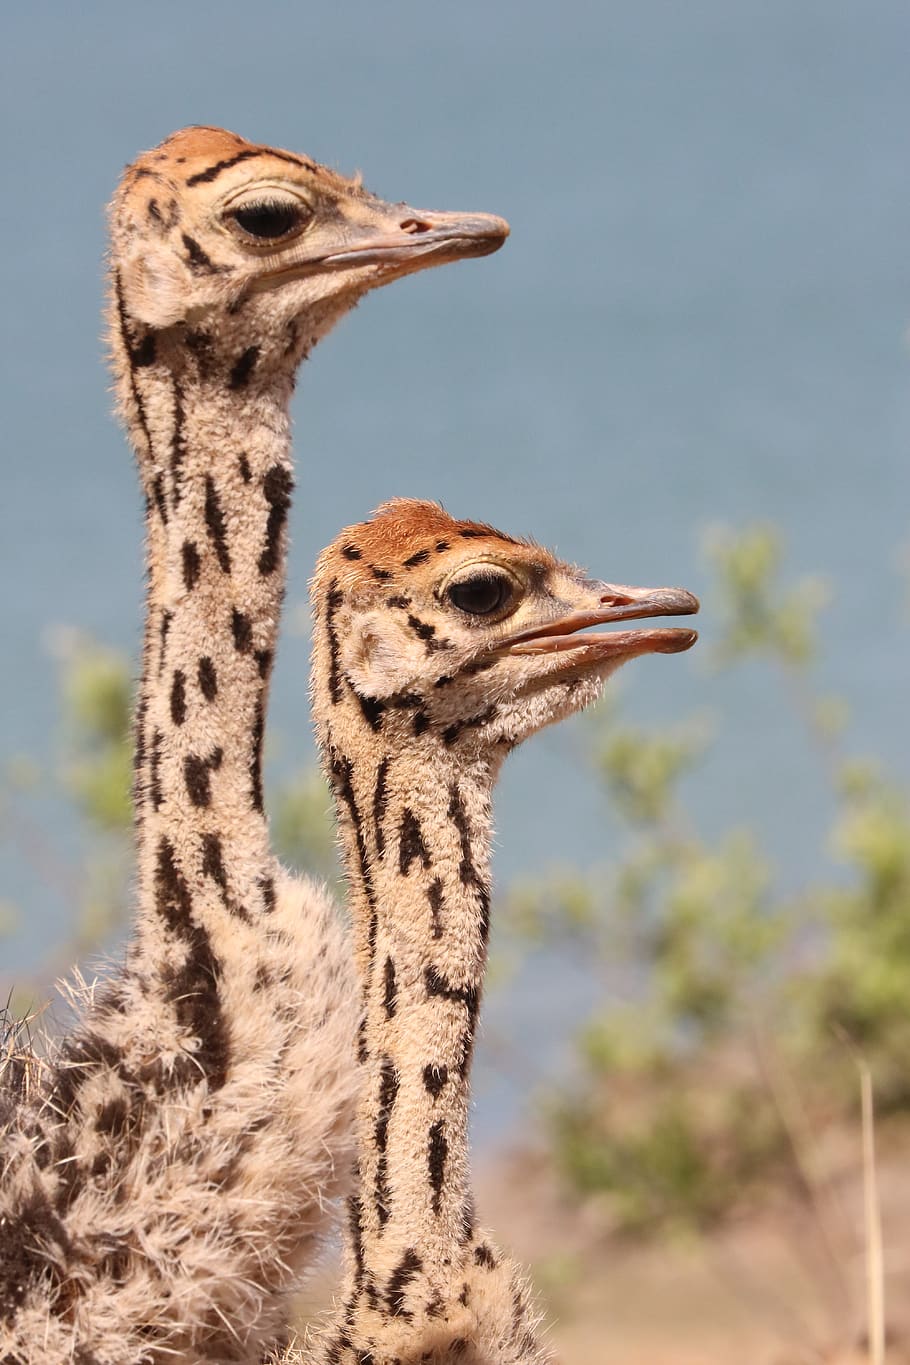 ostriches, young ostriches, portrait, bird, flightless bird, wildlife, south africa, africa, ostrich chicks, chicken